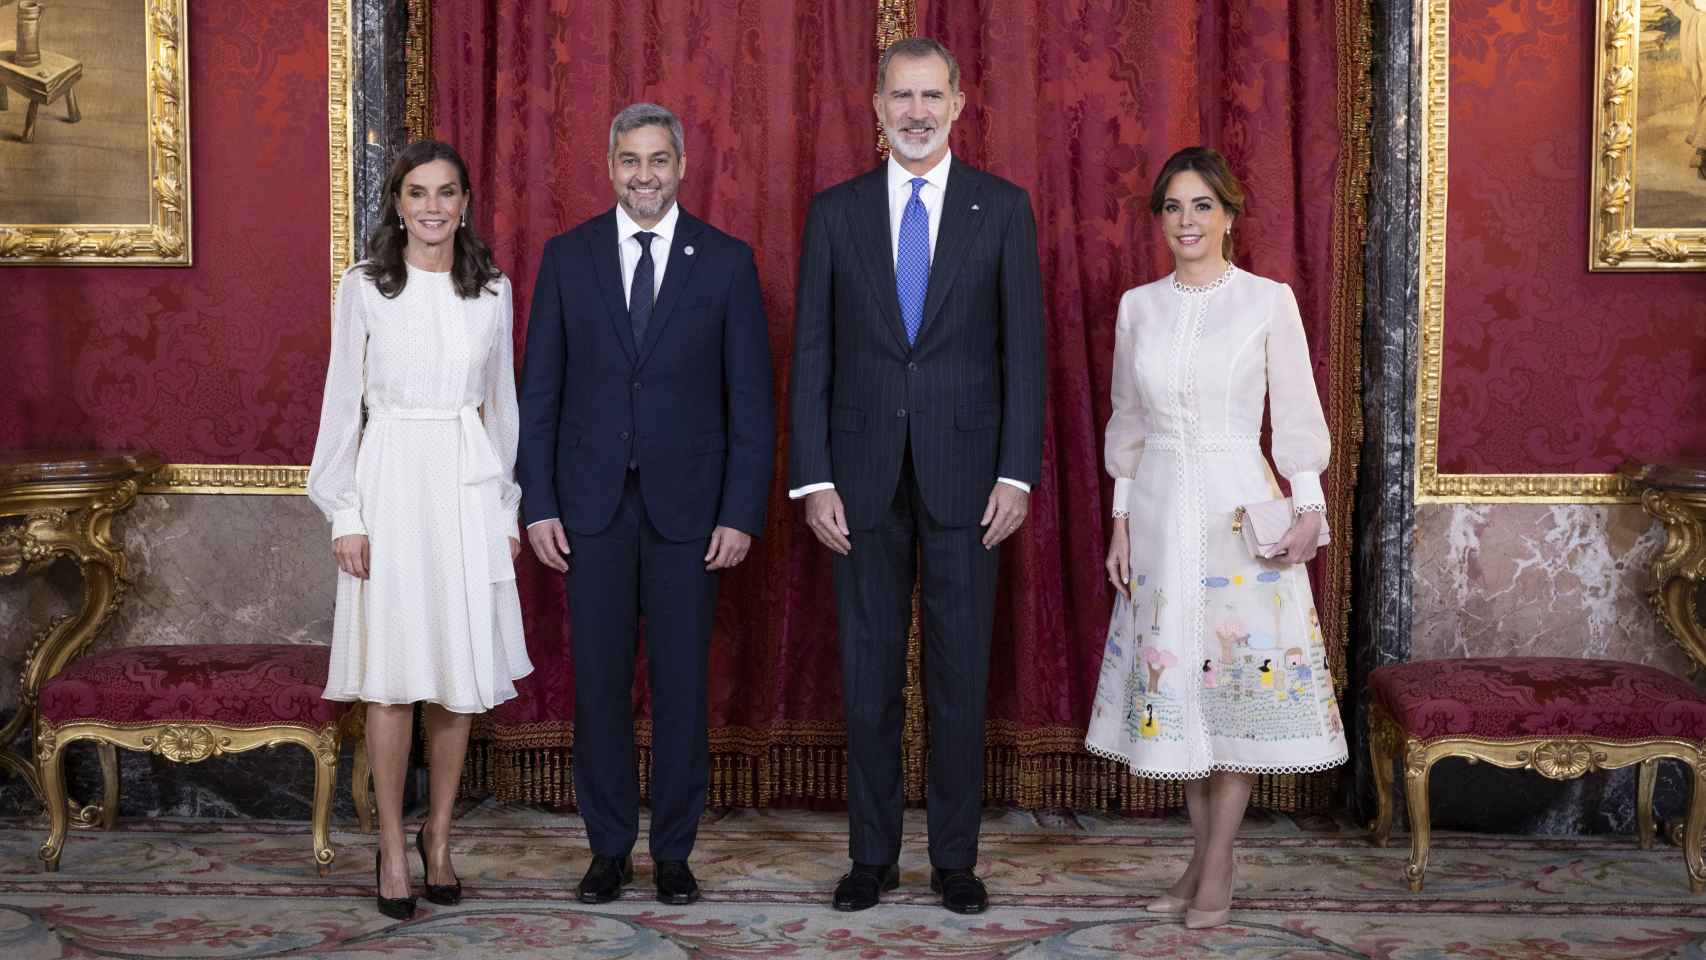 Los Reyes y sus invitados, poco antes de almorzar juntos en el Palacio Real de Madrid.